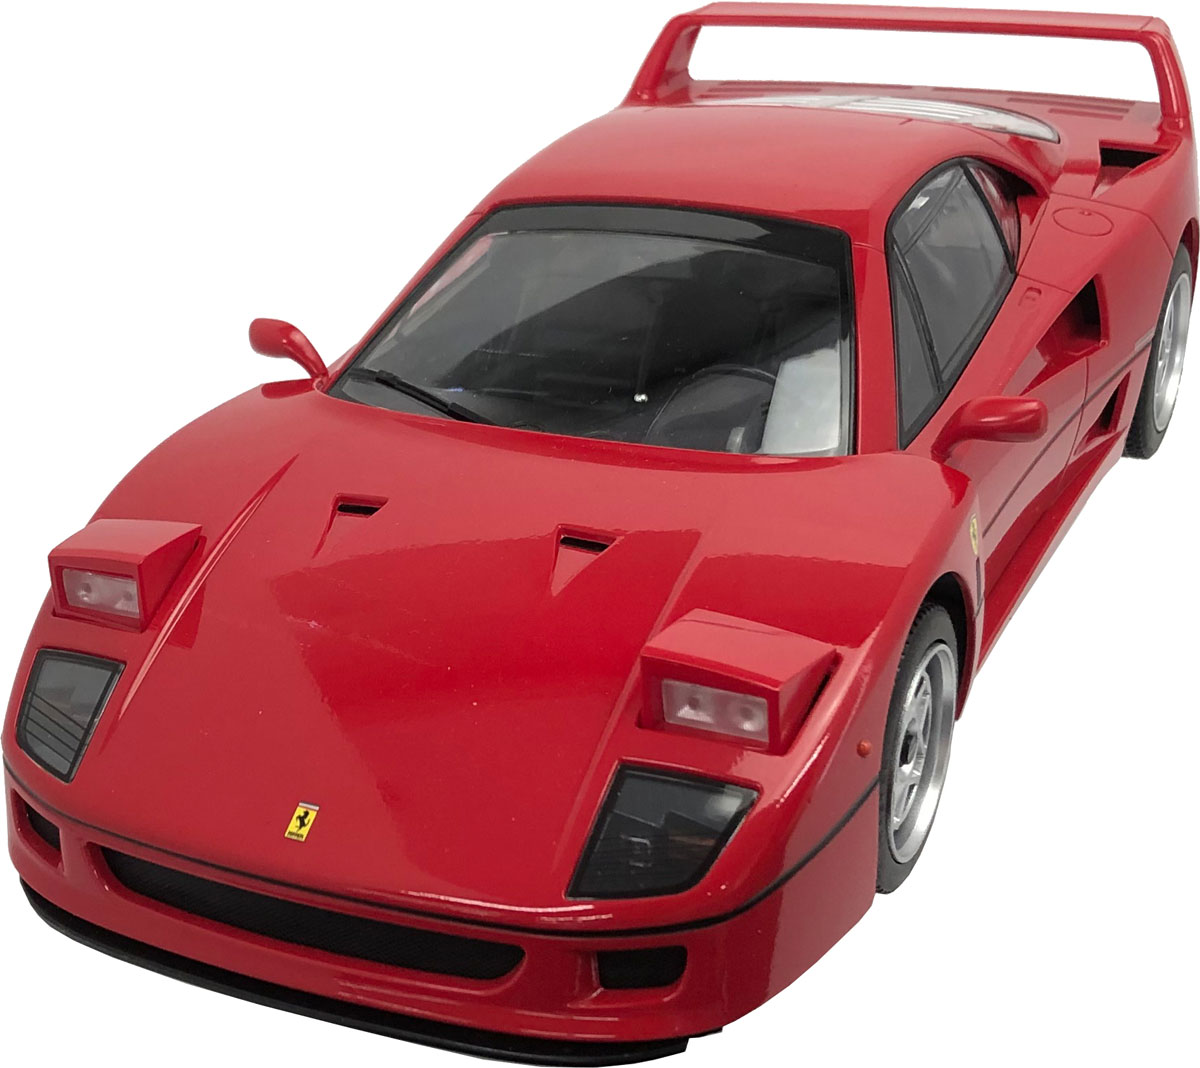 【返品種別B】□「返品種別」について詳しくはこちら□2023年07月 発売※画像はイメージです。実際の商品とは異なる場合がございます。※同一と思われるお客様より大量のご注文をいただいた場合、ご注文をお取り消しとさせていただく場合がございます。【商品紹介】ハピネット　1/14 R/C Ferrari F40 です。これぞ"THE Ferrari"を堂々商品化します！　フェラーリ創業40周年を記念して誕生した、"F40"が1/14スケールR/Cで登場オール乾電池仕様ヘッドライト開閉ヘッドライト・テールランプ点灯【セット内容】本体×1コントローラー×1取扱説明書×1【商品仕様】商品サイズ　：　W320×H145×D80（mm）パッケージサイズ　：　W430×H250×D175(mm)使用電池　：　本体/単3乾電池×5本(別売)、コントローラー/単3乾電池×2本(別売）周波数　：　2.4GHz対象年齢　：　6歳〜模型＞ラジコン＞ラジコン本体＞乾電池駆動ラジコンカー